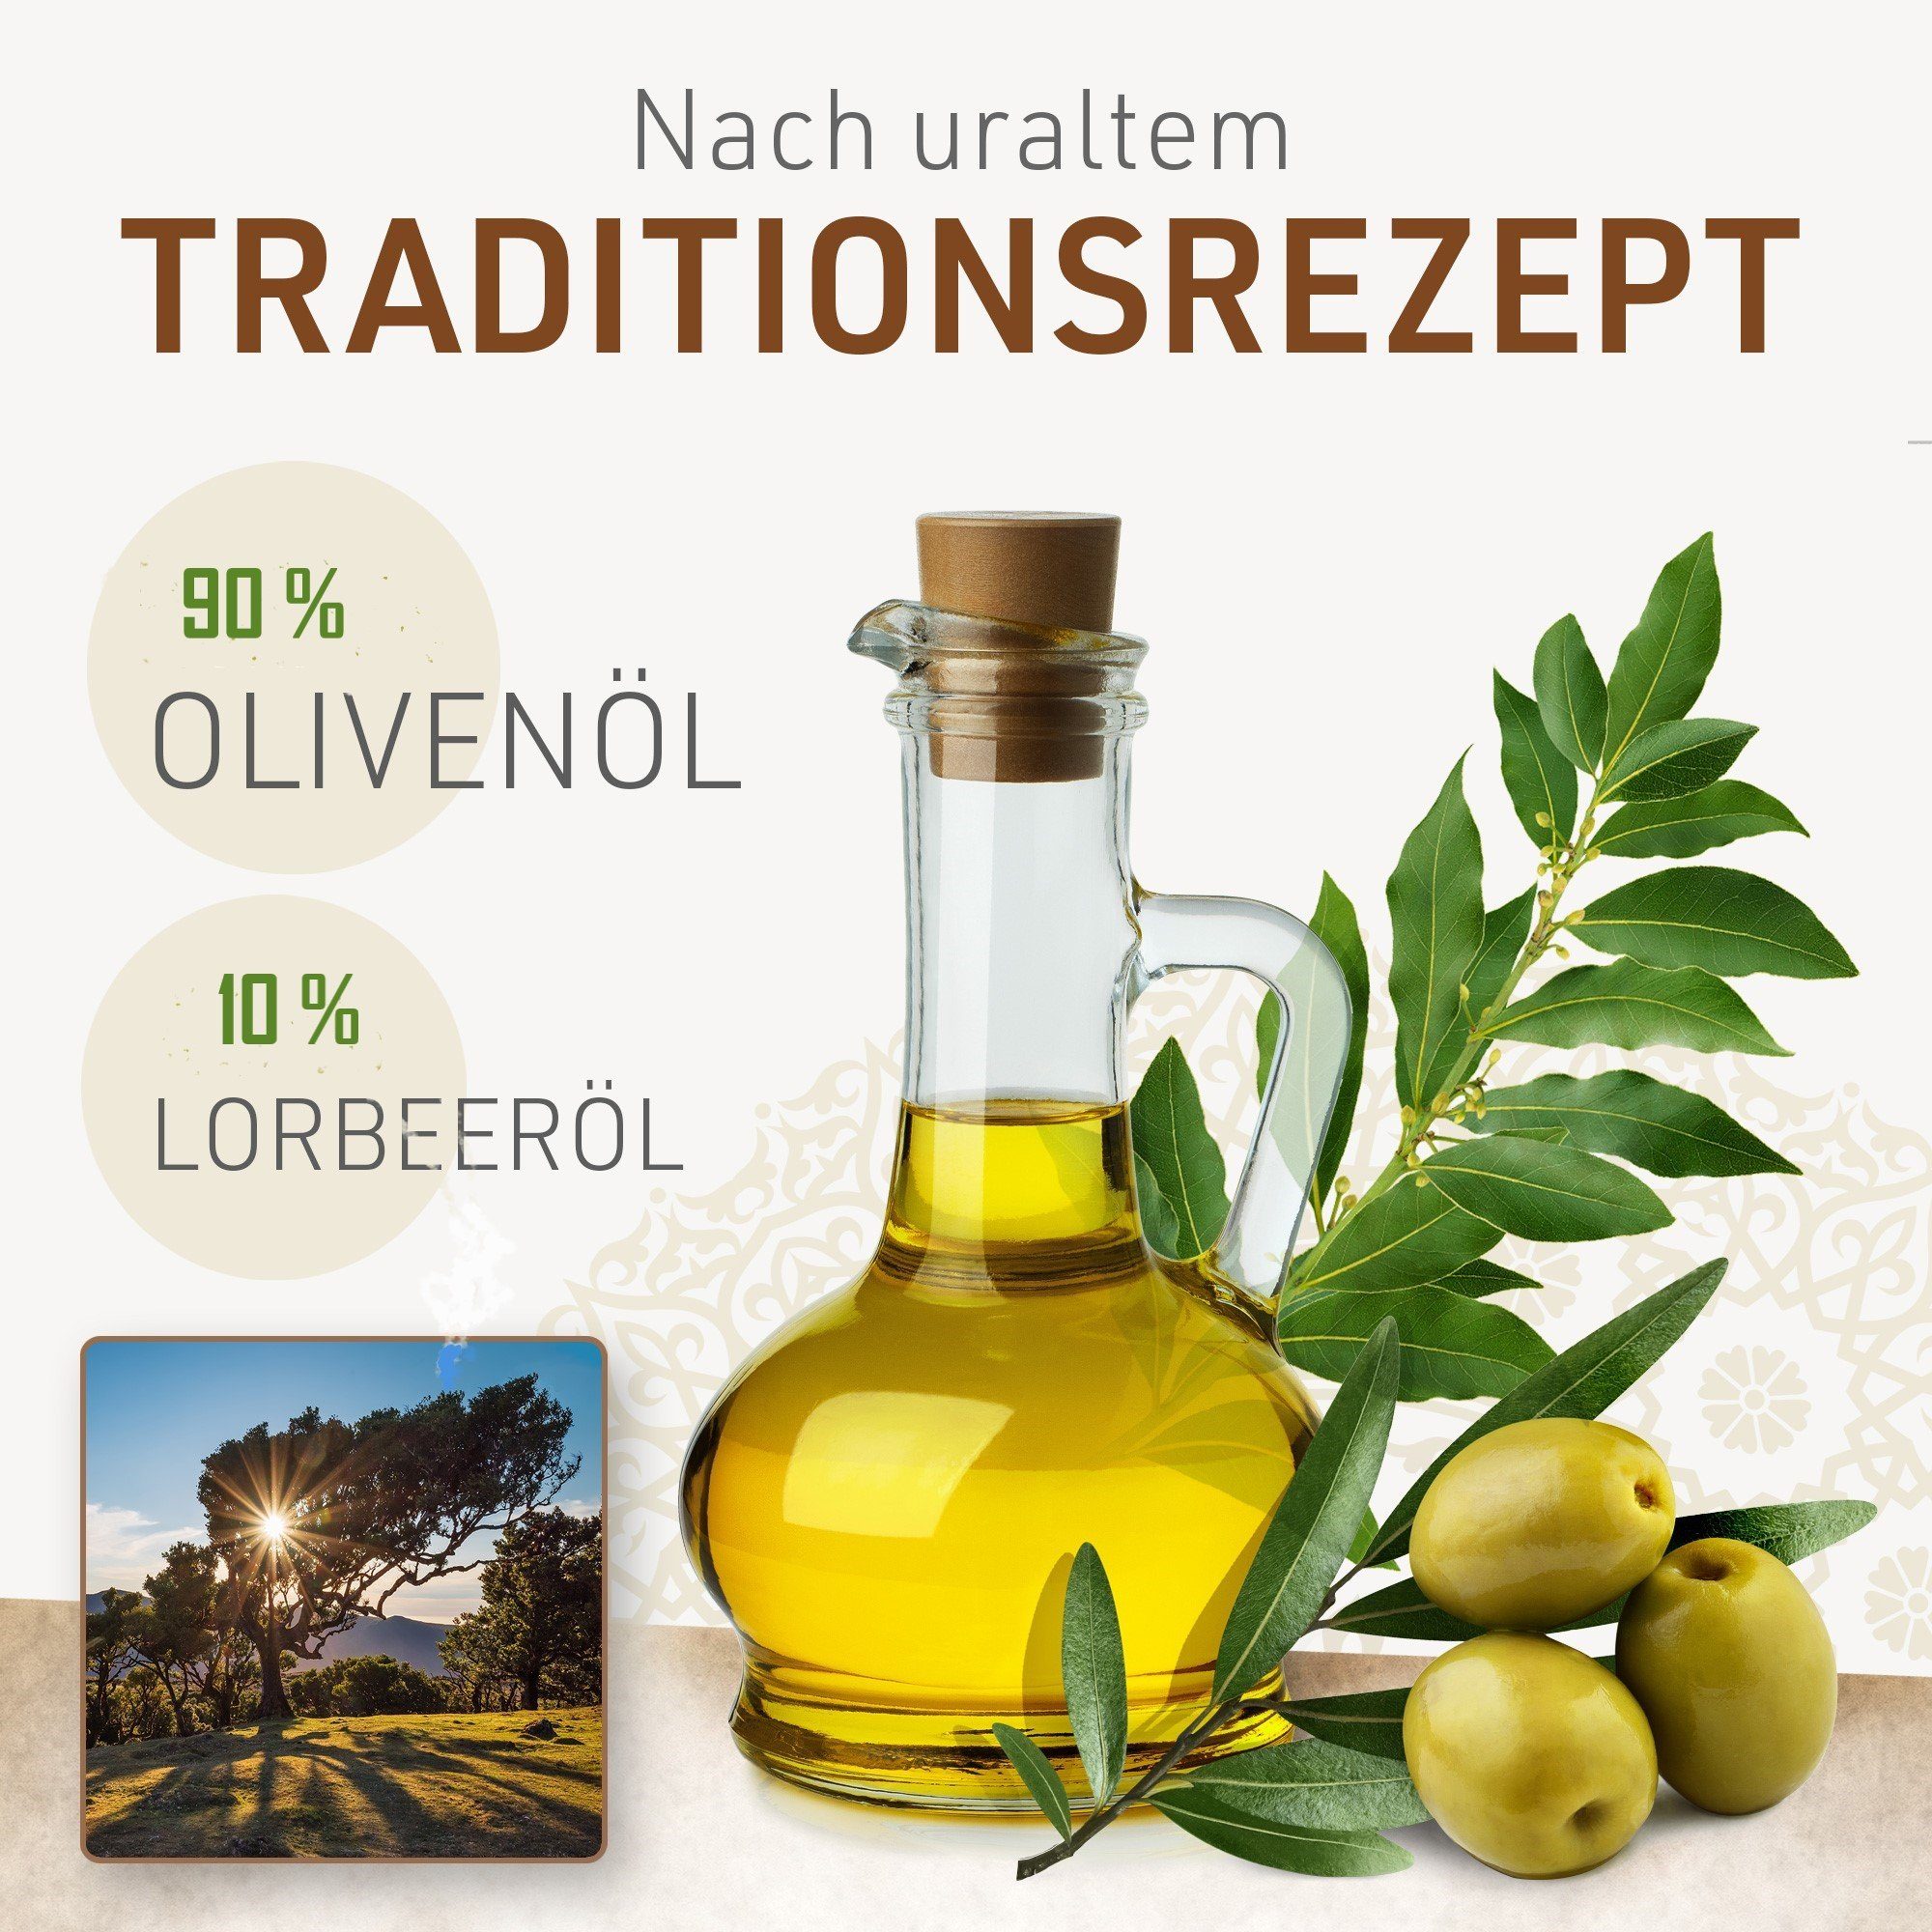 1 X Jumana - Duschseife Olivenöl, Alepposeife, 90% originale g 200 Lorbeeröl 10% Jumana Feste